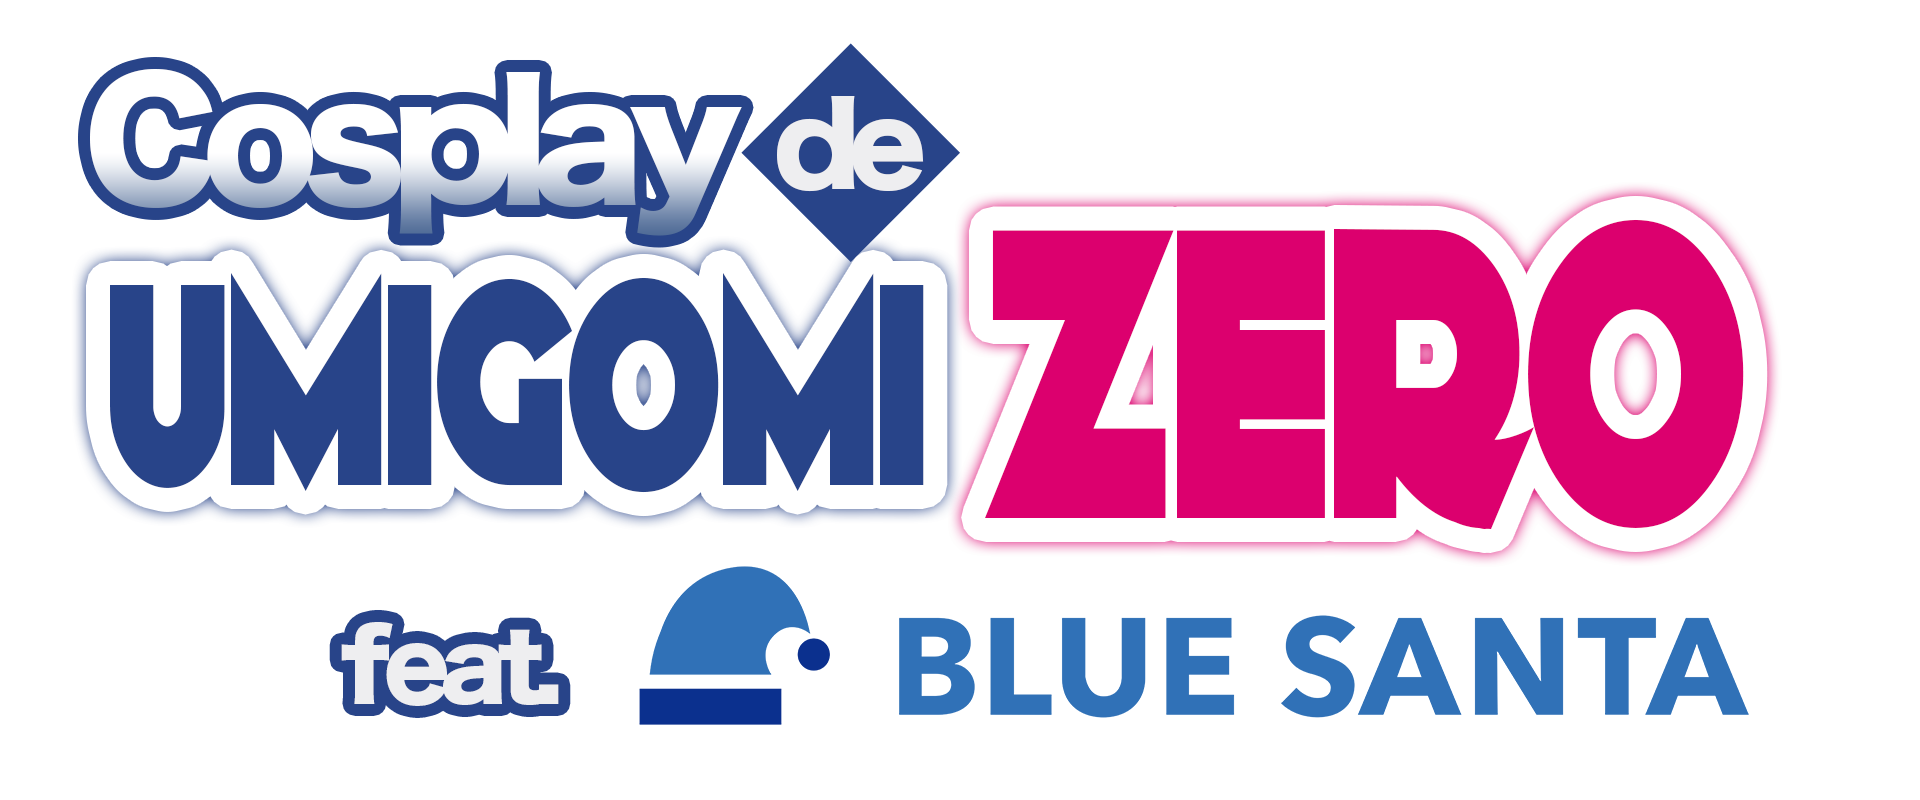 Cosplay de UMIGOMI-ZERO feat. BLUE SANTA